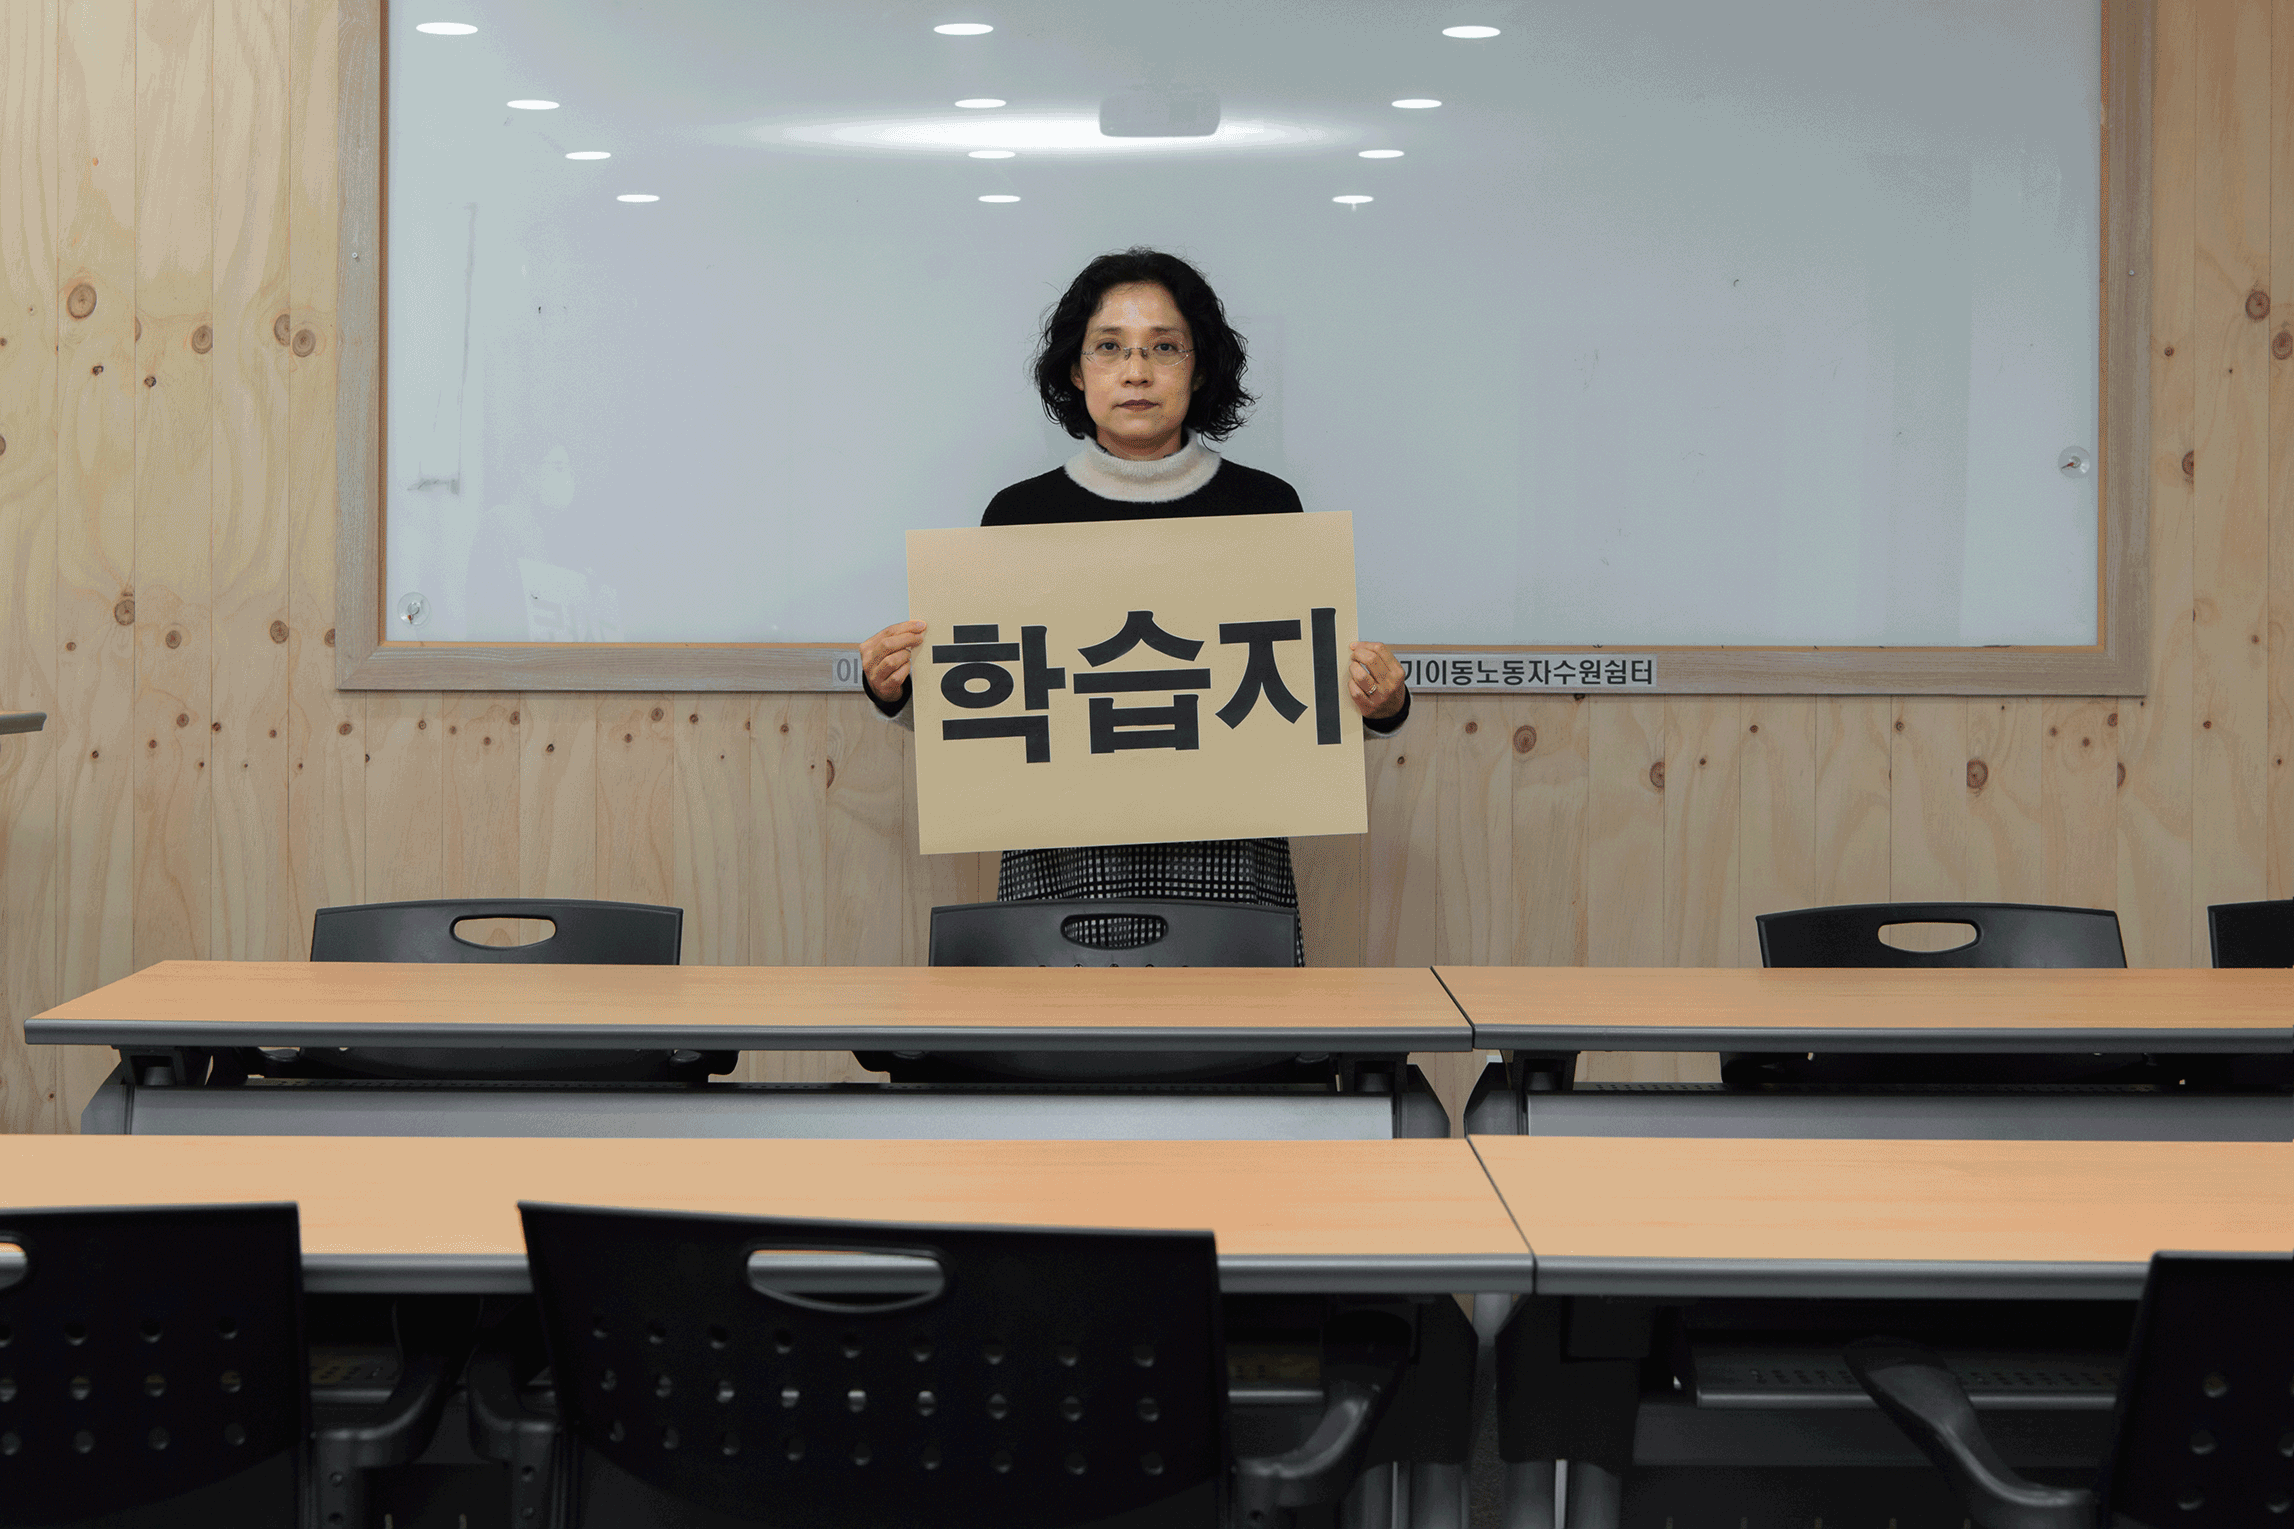 지난 14일 경기 수원시 이동노동자 쉼터에서 구몬학습 교사 김미례(55)씨가 '학습지 교사도 노동자다'라고 적힌 피켓을 들고 있다.